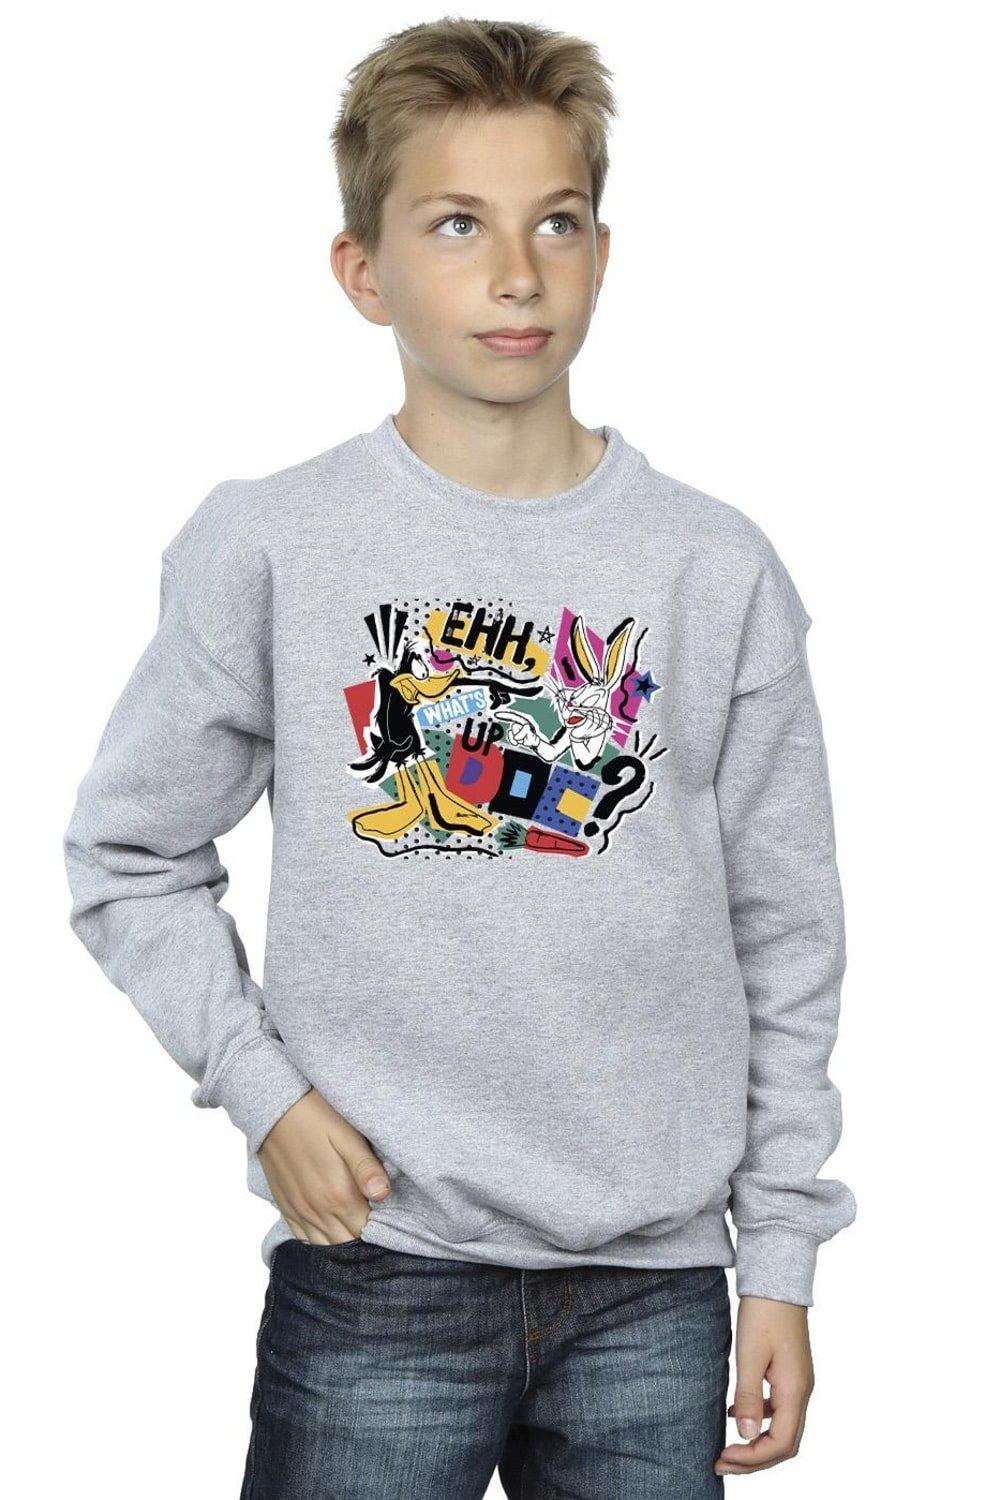 What’s Up Doc Pop Art Sweatshirt